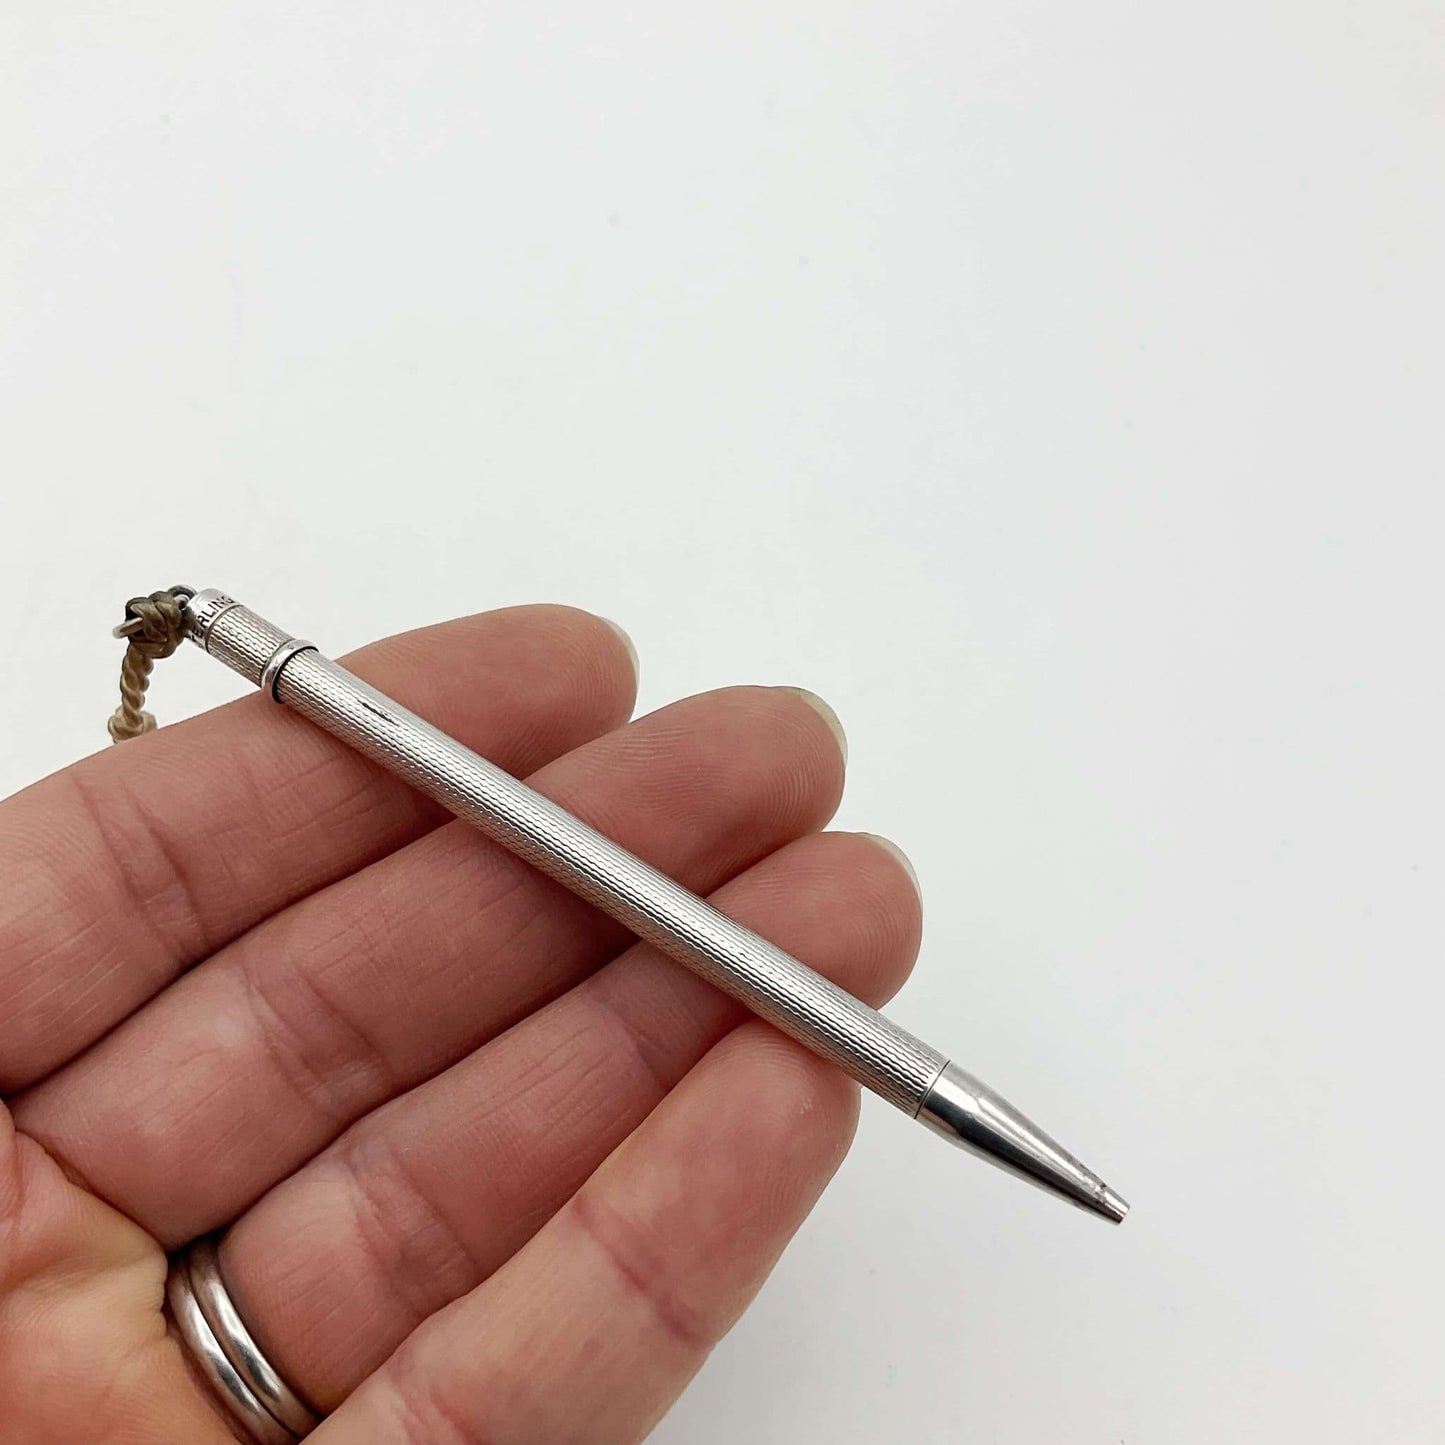 Vintage Sterling Silver Propelling Pencil, Bridge Pencil